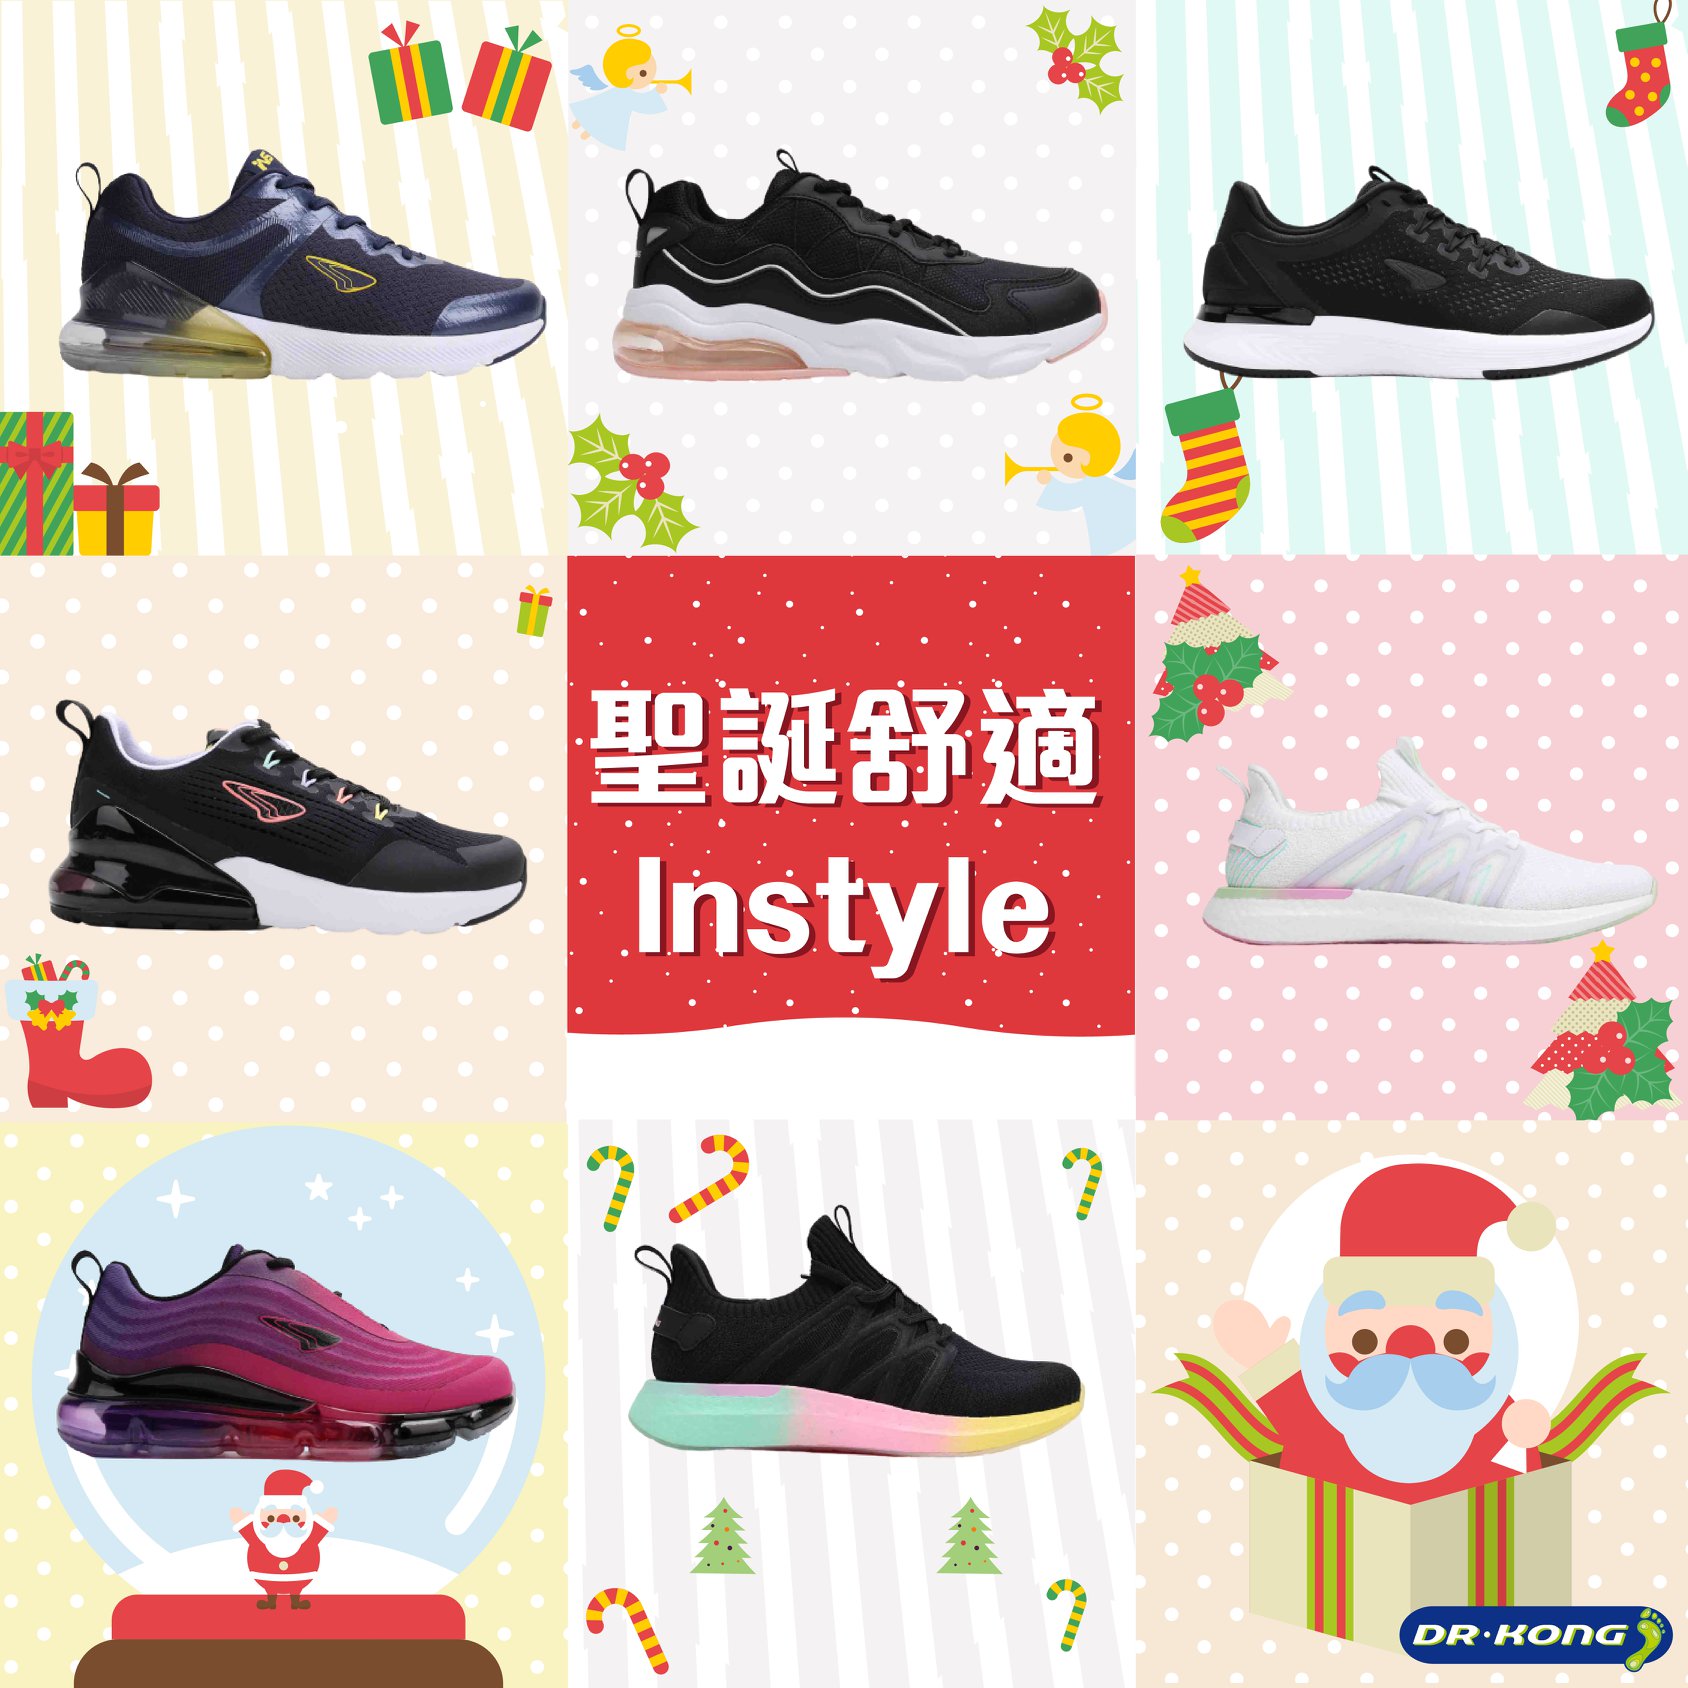 【聖誕行出舒適Style💃】 Dr. Kong InStyle系列運動鞋全新上市！配合Dr. Kong「Check & Fit驗腳配墊」服務，根據驗腳結果，配返對合適嘅鞋墊，咁就著得舒服又健康喇！加上有多種顔色及款式選擇，梗有一款啱你！快啲嚟揀返對啱Style嘅運動鞋，準備迎接歡樂節日🎊！ Instyle 女士運動鞋 👉🏻festivalwalk